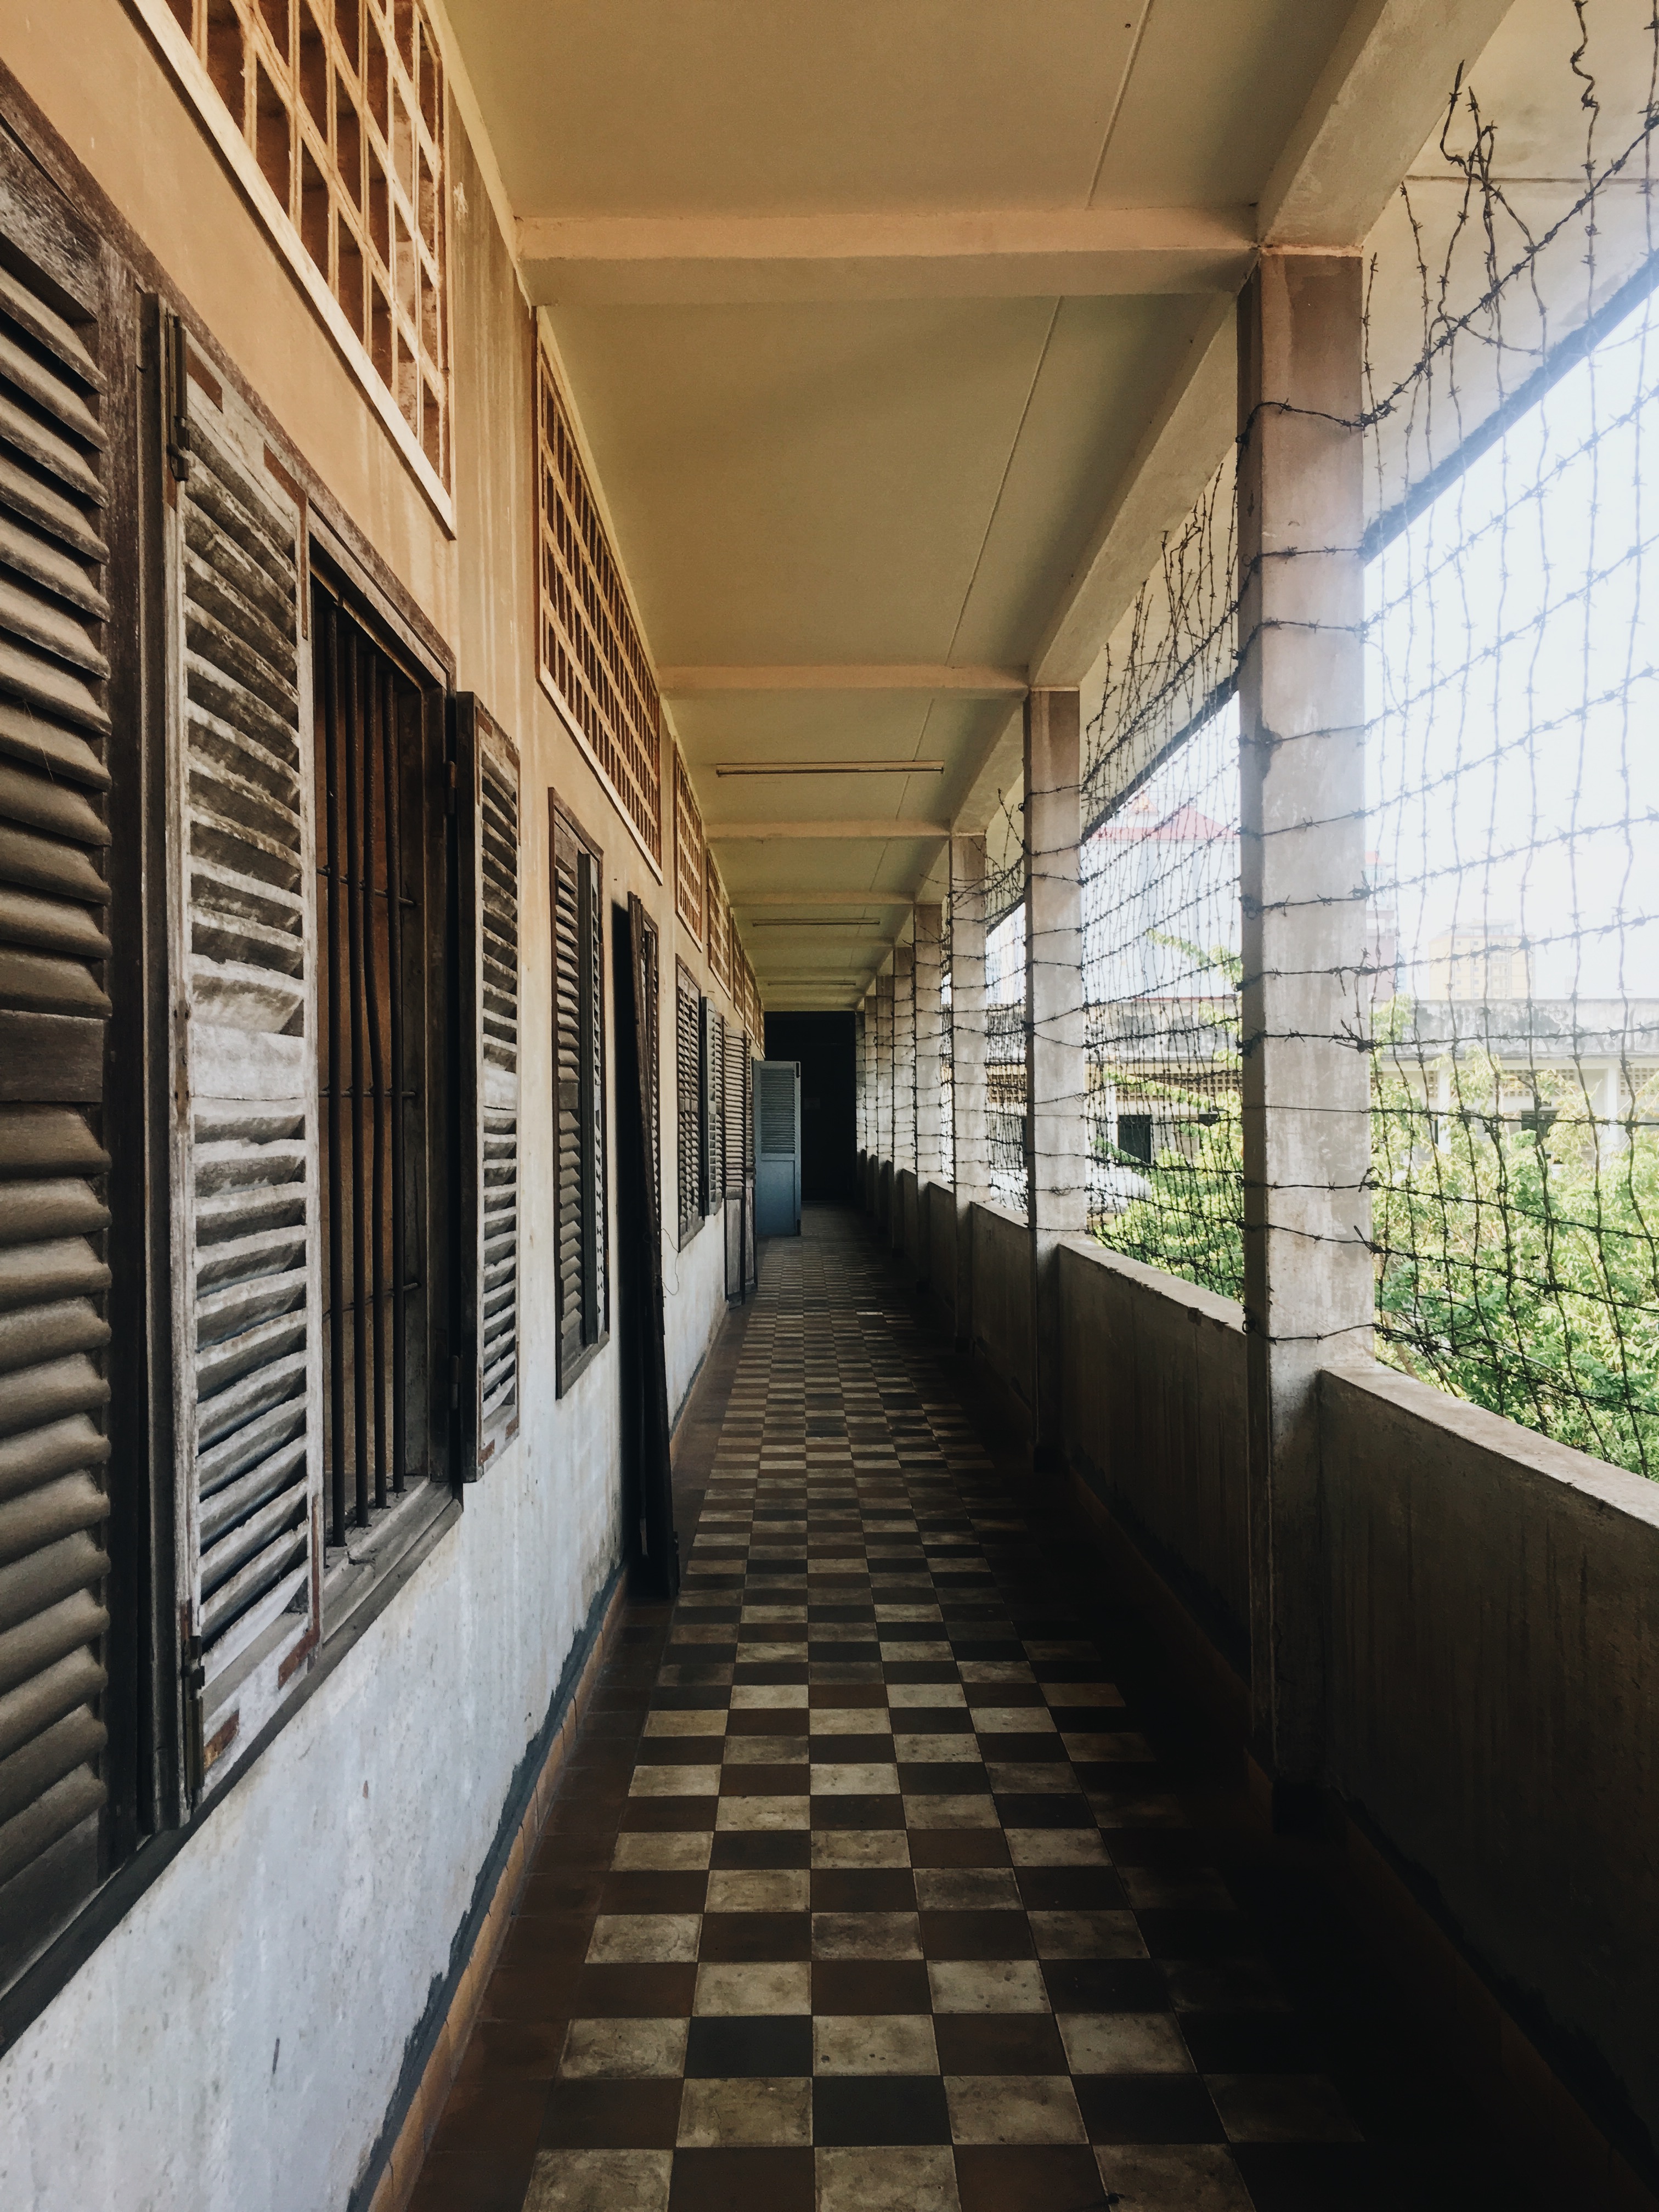 Phnom Penh, Interrogation Center